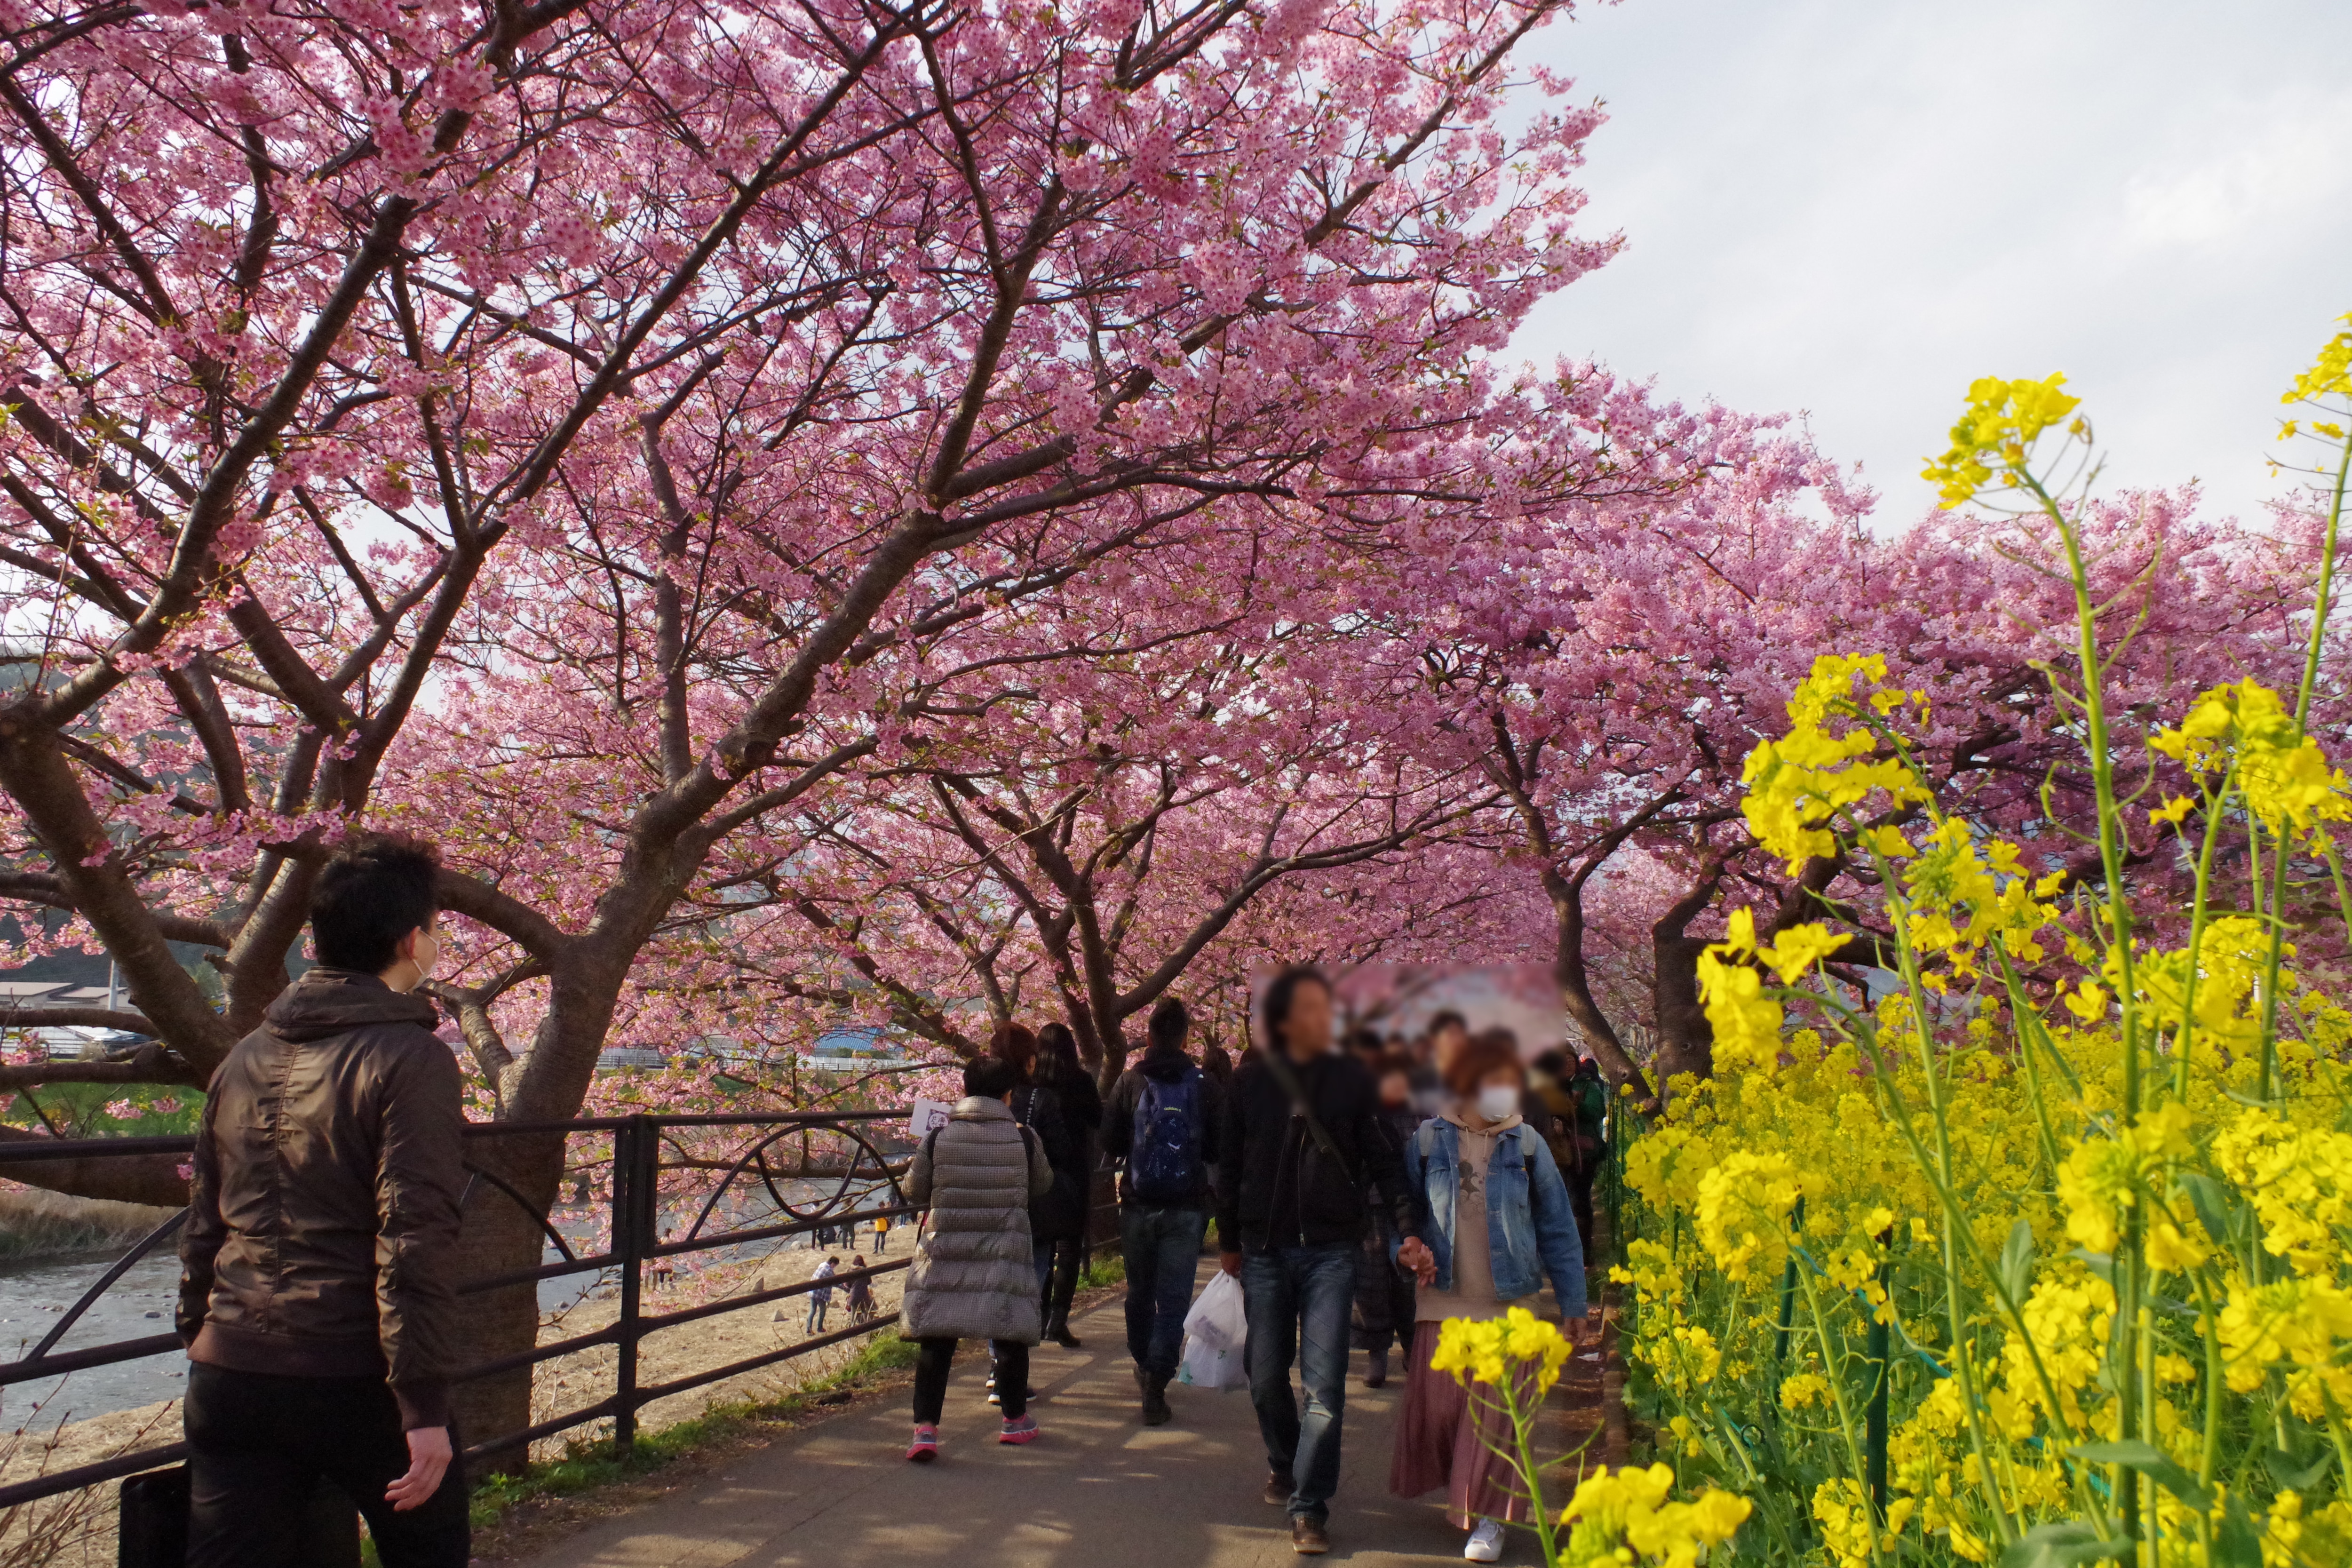 相模原・町田の賃貸管理会社オリバーの「河津桜まつりツアー」。川沿いに約3.5㎞続く桜並木を眺めながら、河津桜まつりを楽しみます。